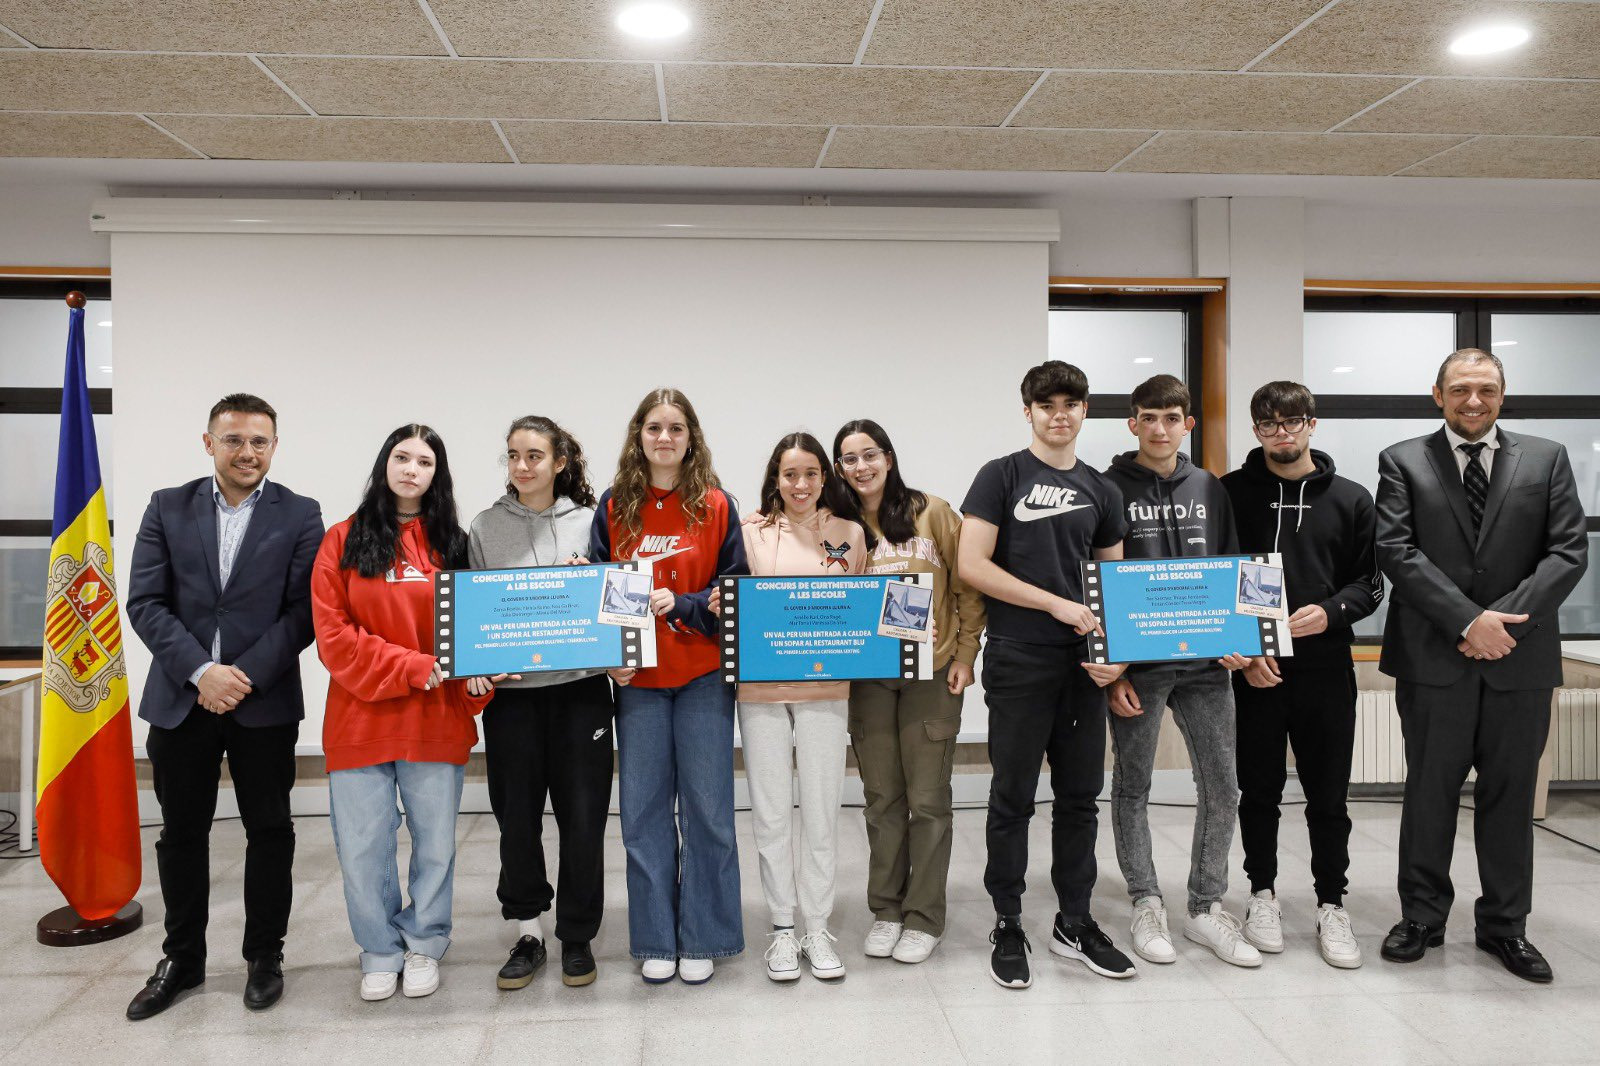 Els alumnes de l’Escola Andorrana de segona ensenyança de Santa Coloma guanyen el concurs de curts sobre assetjament